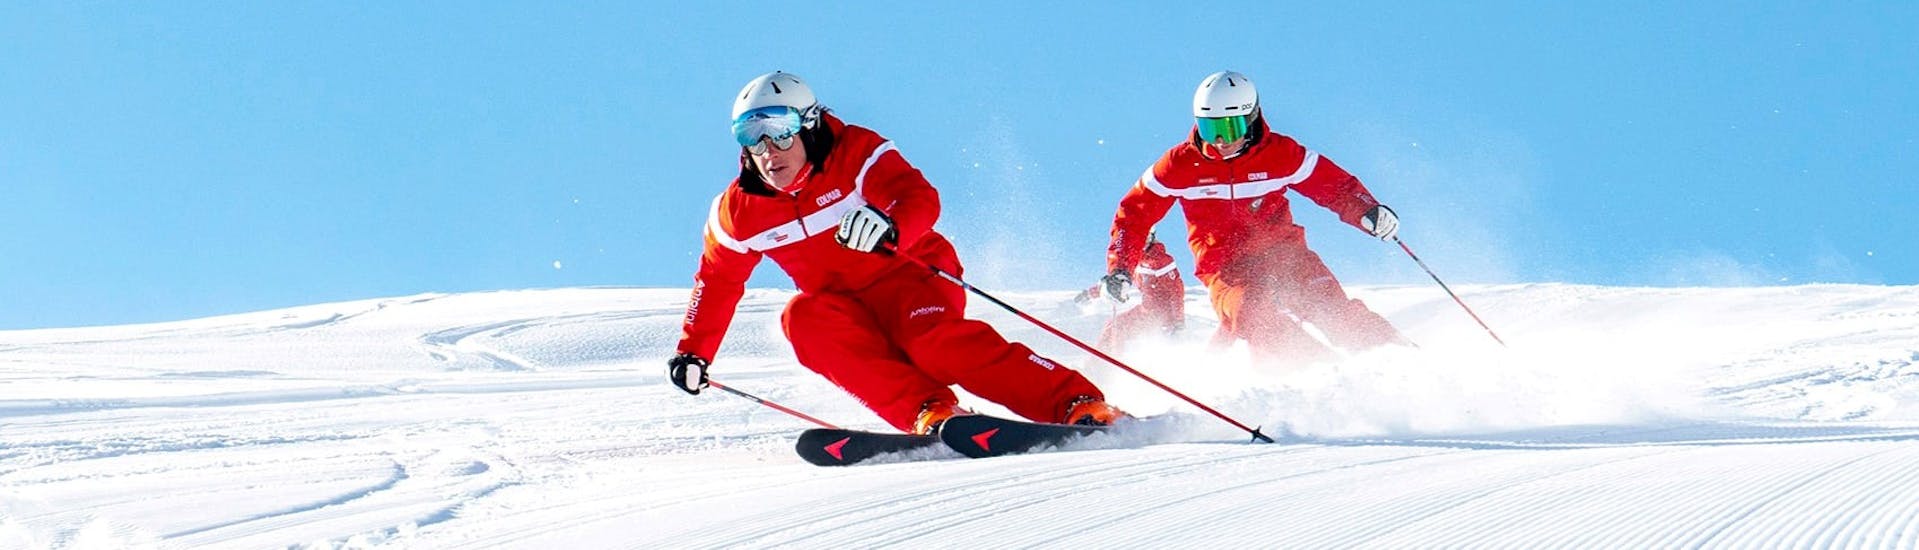 Skilessen voor volwassenen vanaf 18 jaar - gevorderd.